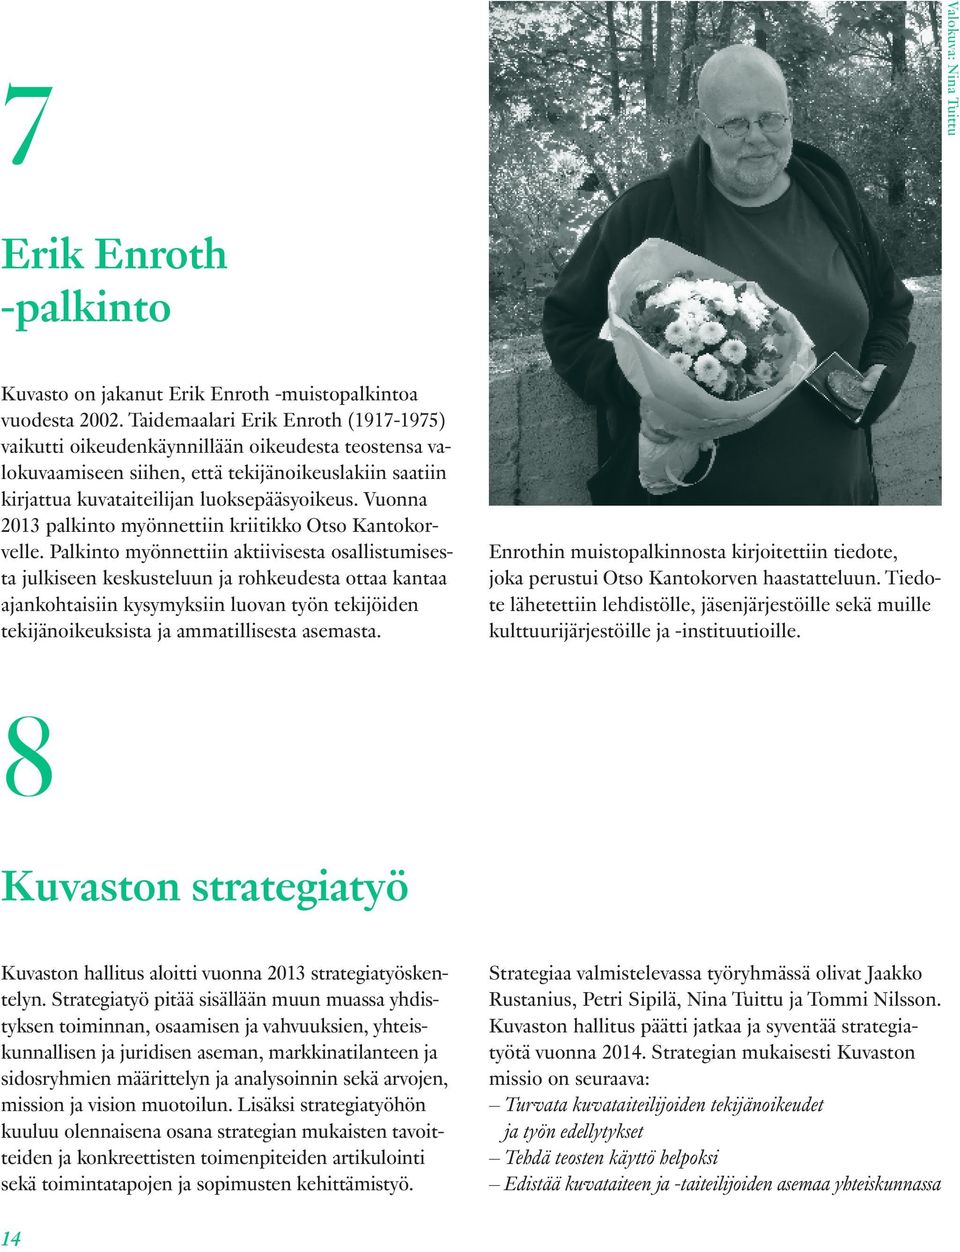 Vuonna 2013 palkinto myönnettiin kriitikko Otso Kantokorvelle.